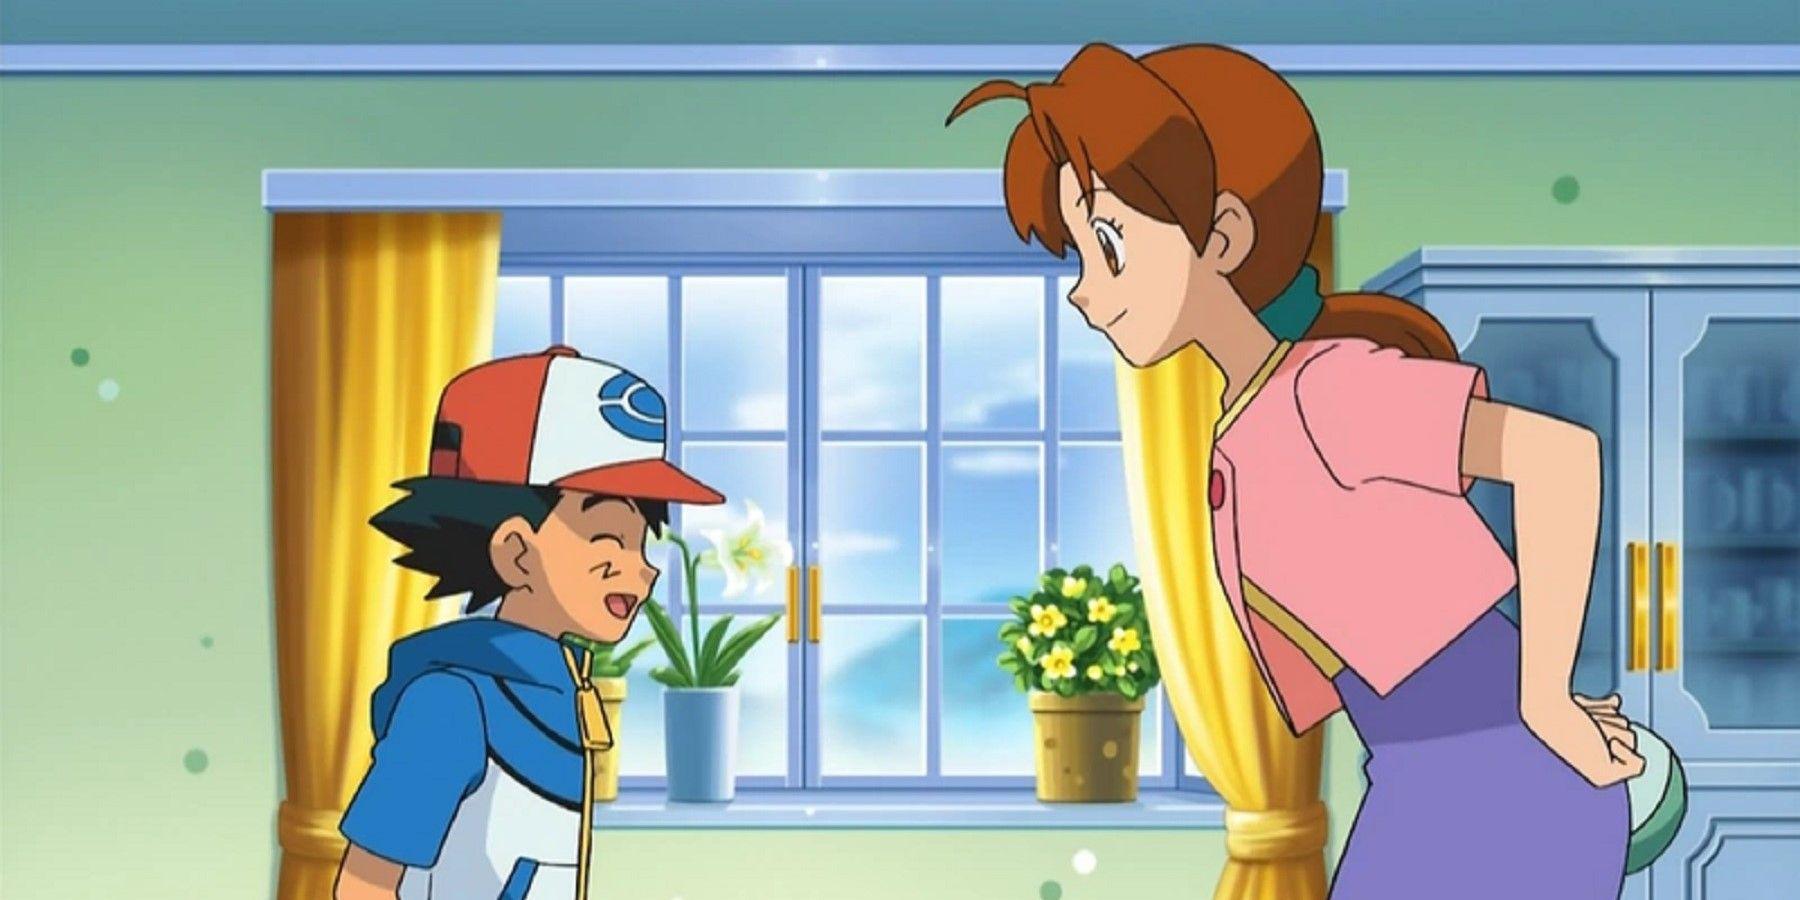 O anime Pokemon deve revelar o pai de Ash antes de terminar sua história